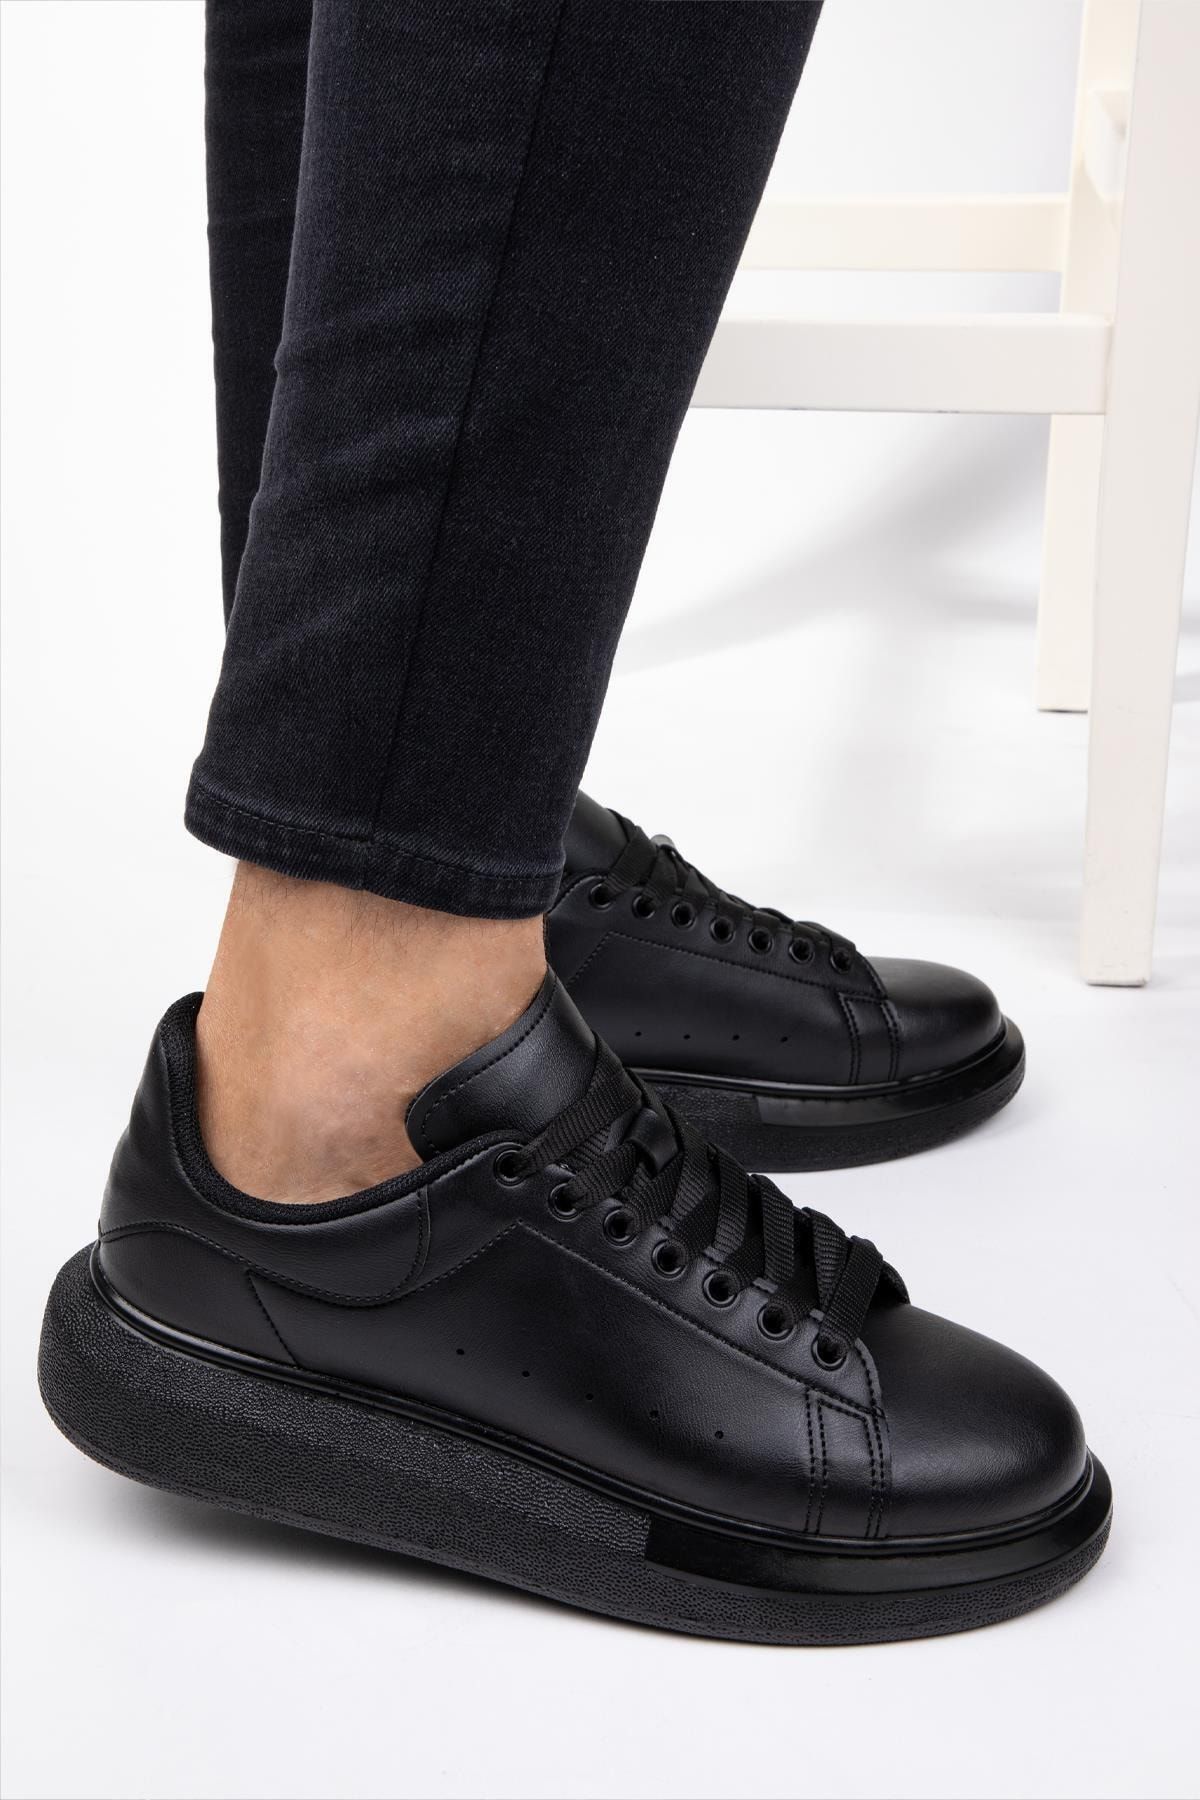 NAVYSIDE Unisex Sneaker Memory Hafıza Yüksek Tabanlı Yürüyüş Ayakkabısı Beyaz & Siyah & Pudra